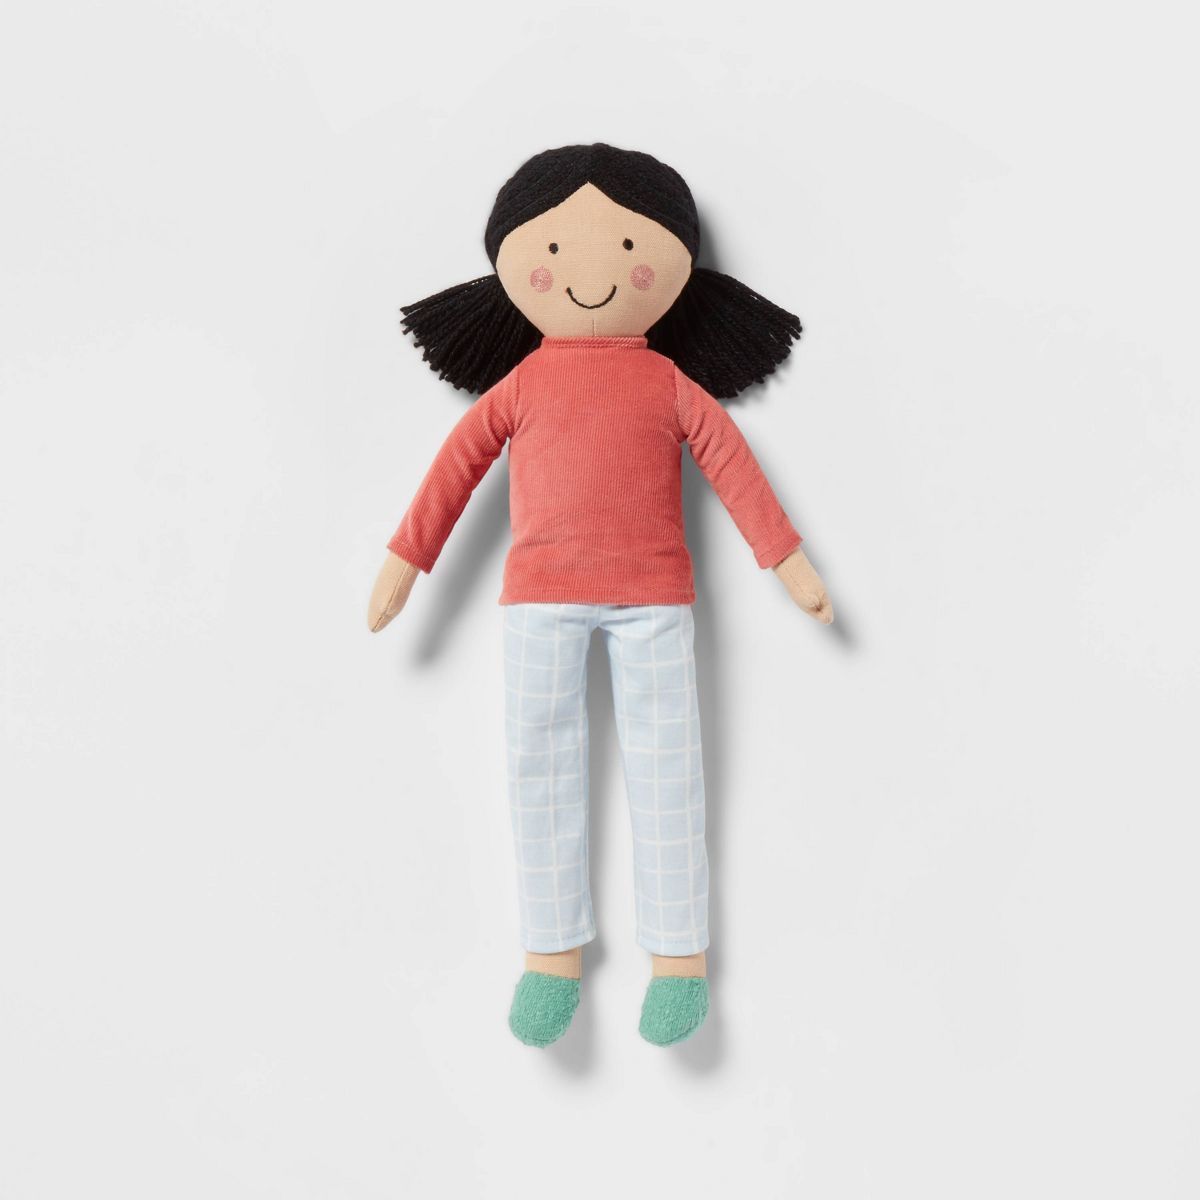 Decorative Kids' Pillow Pal Pink - Pillowfort™ | Target